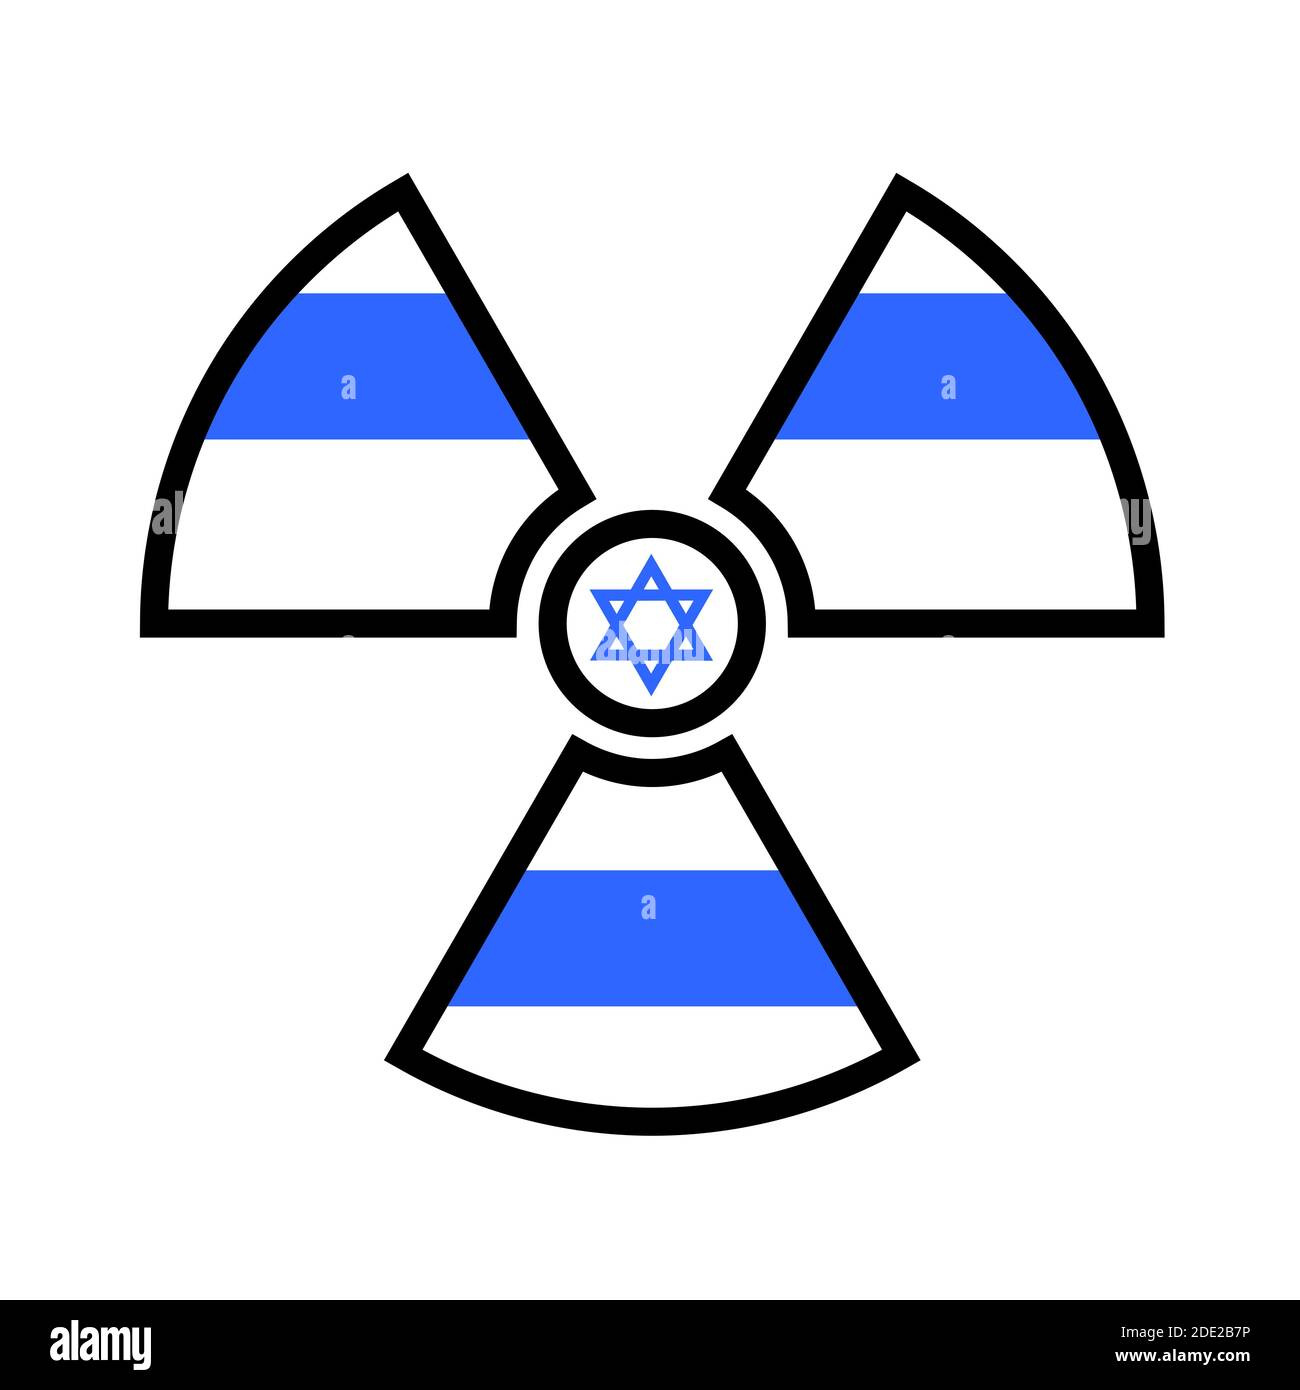 Flagge Israels als Symbol der Strahlung - Metapher des israelischen Atom- und Atomprogramms - Macht, Bomben, Waffen, Energie. Stockfoto